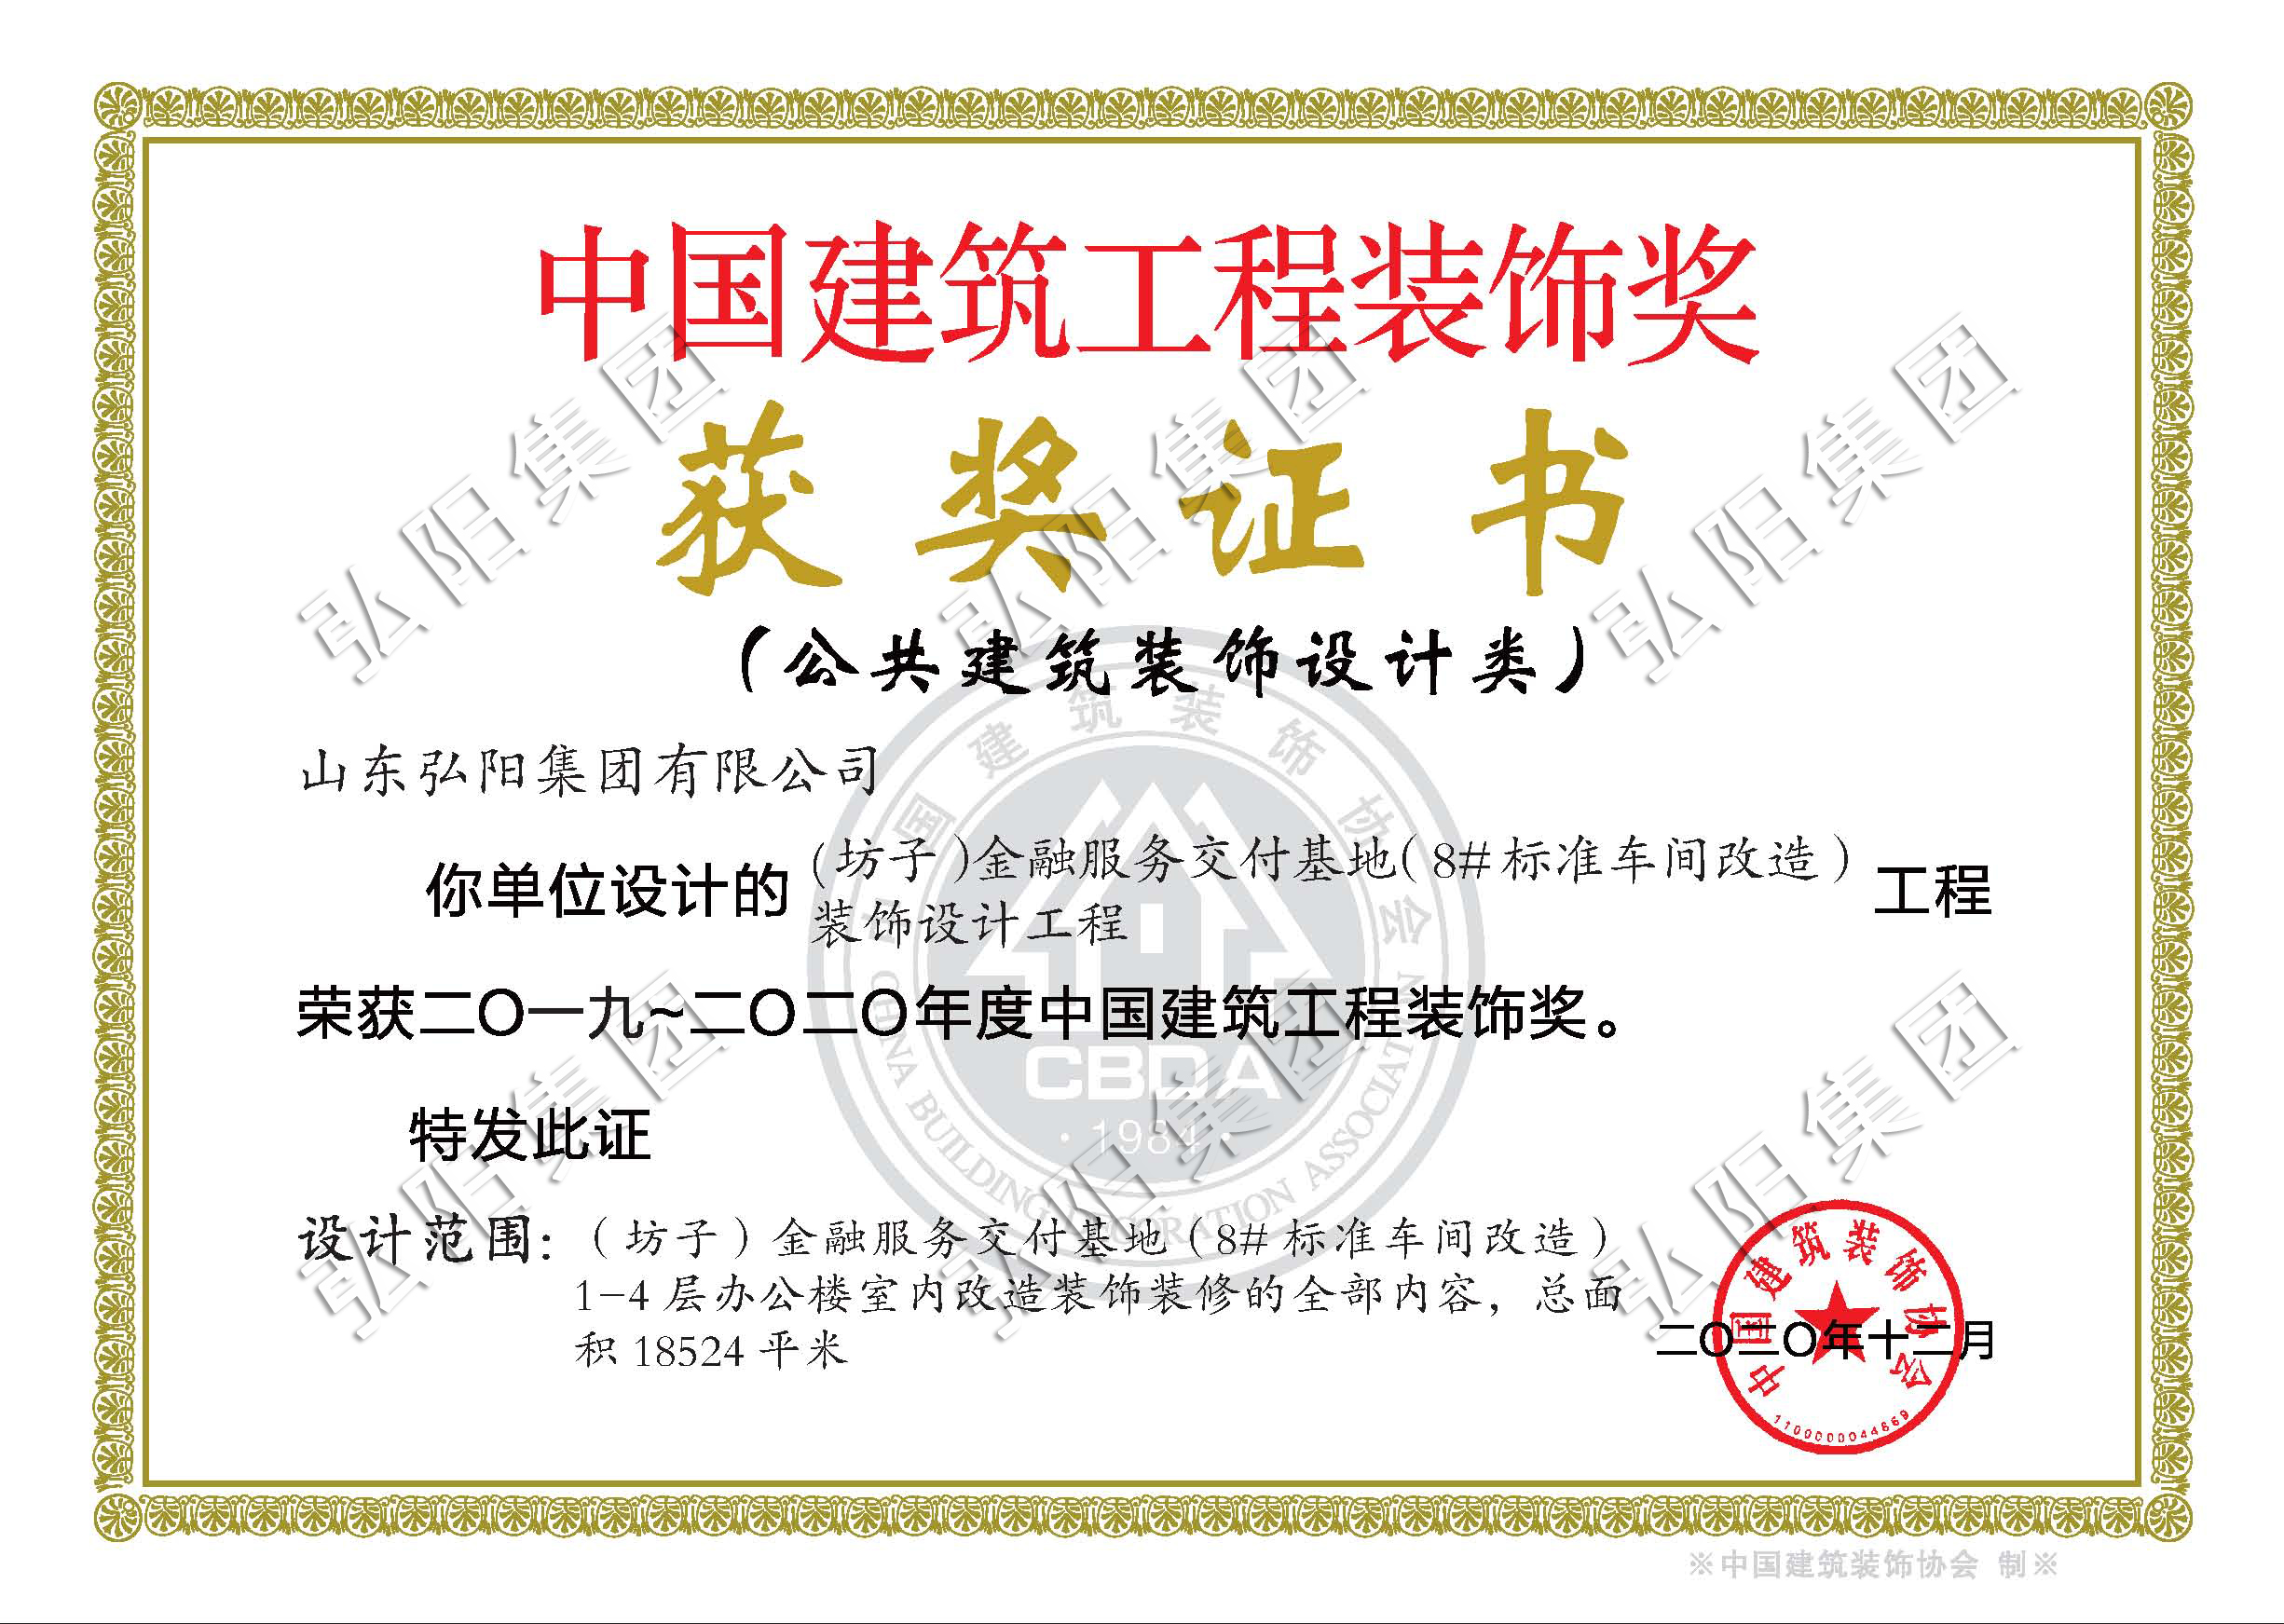 2019年至2020年度中国建筑工程装饰奖